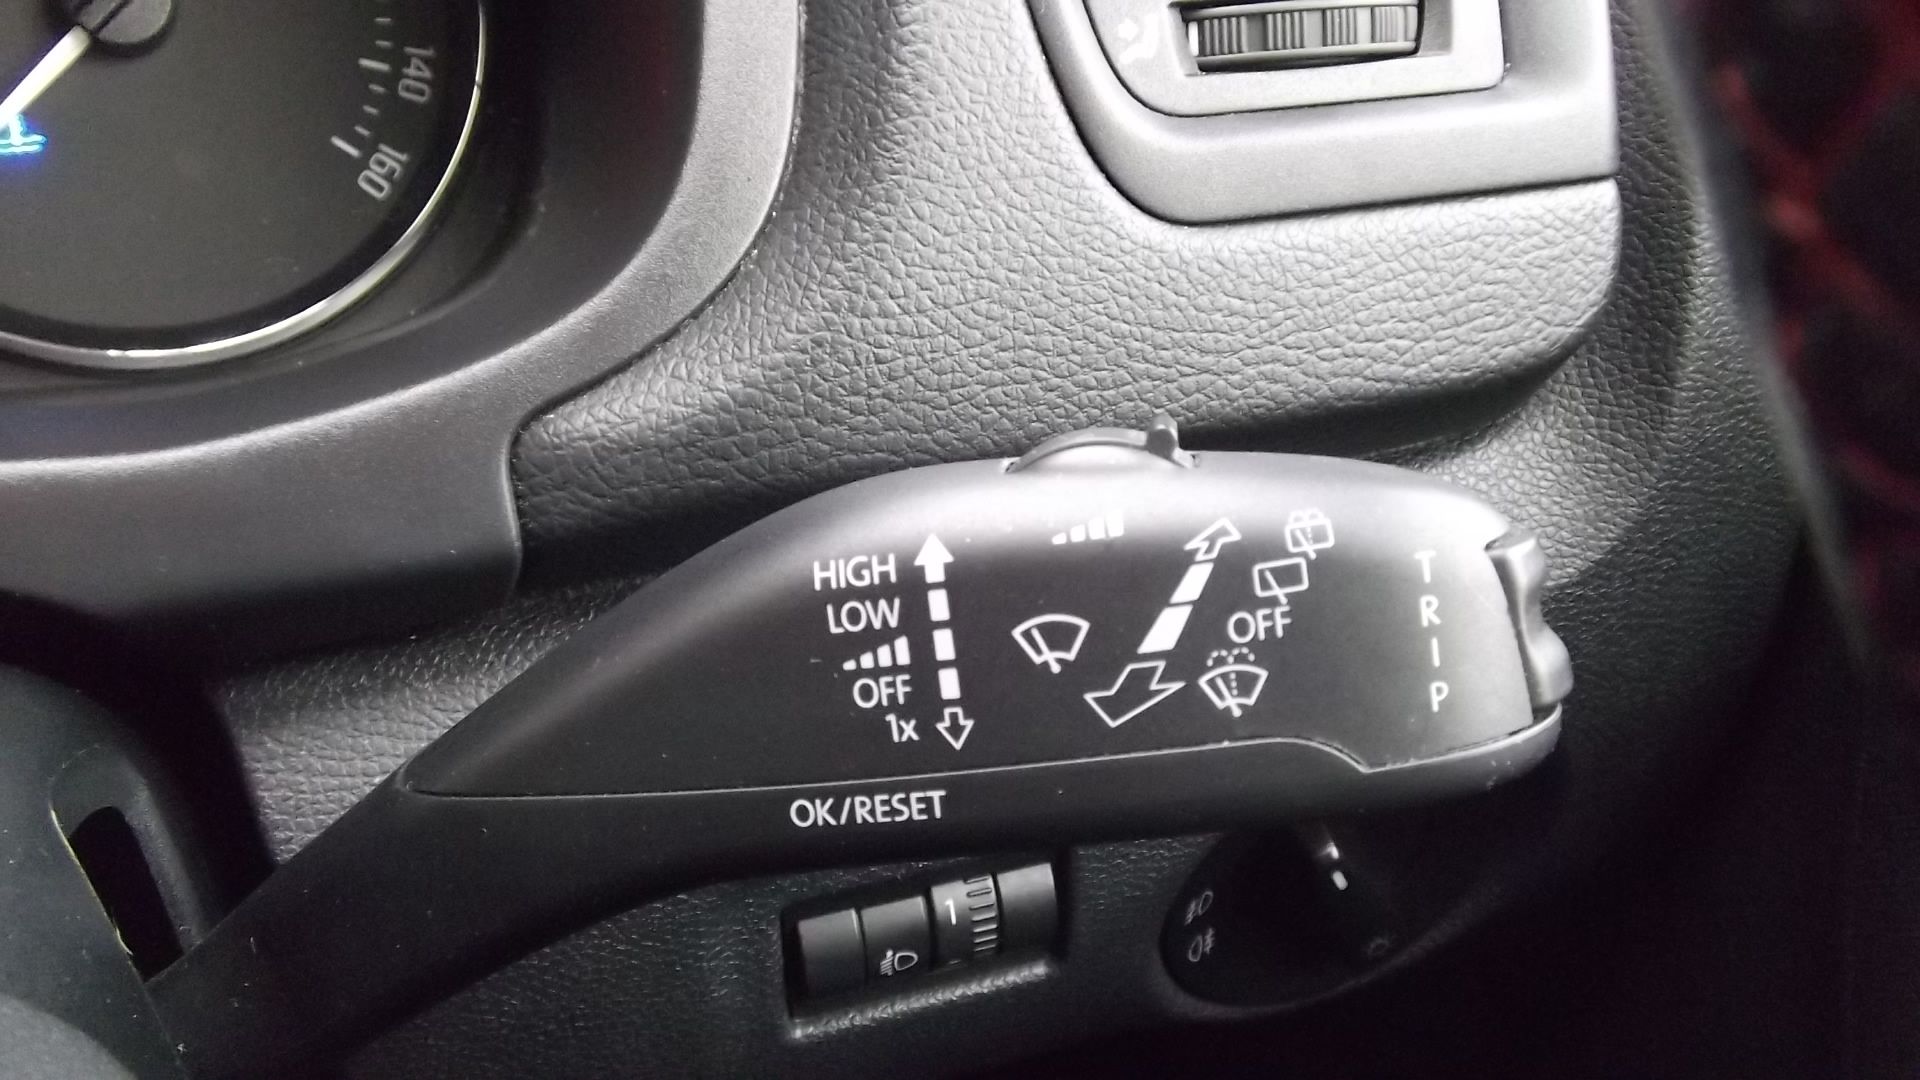 2014 Skoda Fabia Monte Carlo 1.6 Tdi Cr 5Dr Hatchback - CL505 - NO VAT ON THE HAMMER - - Image 15 of 26